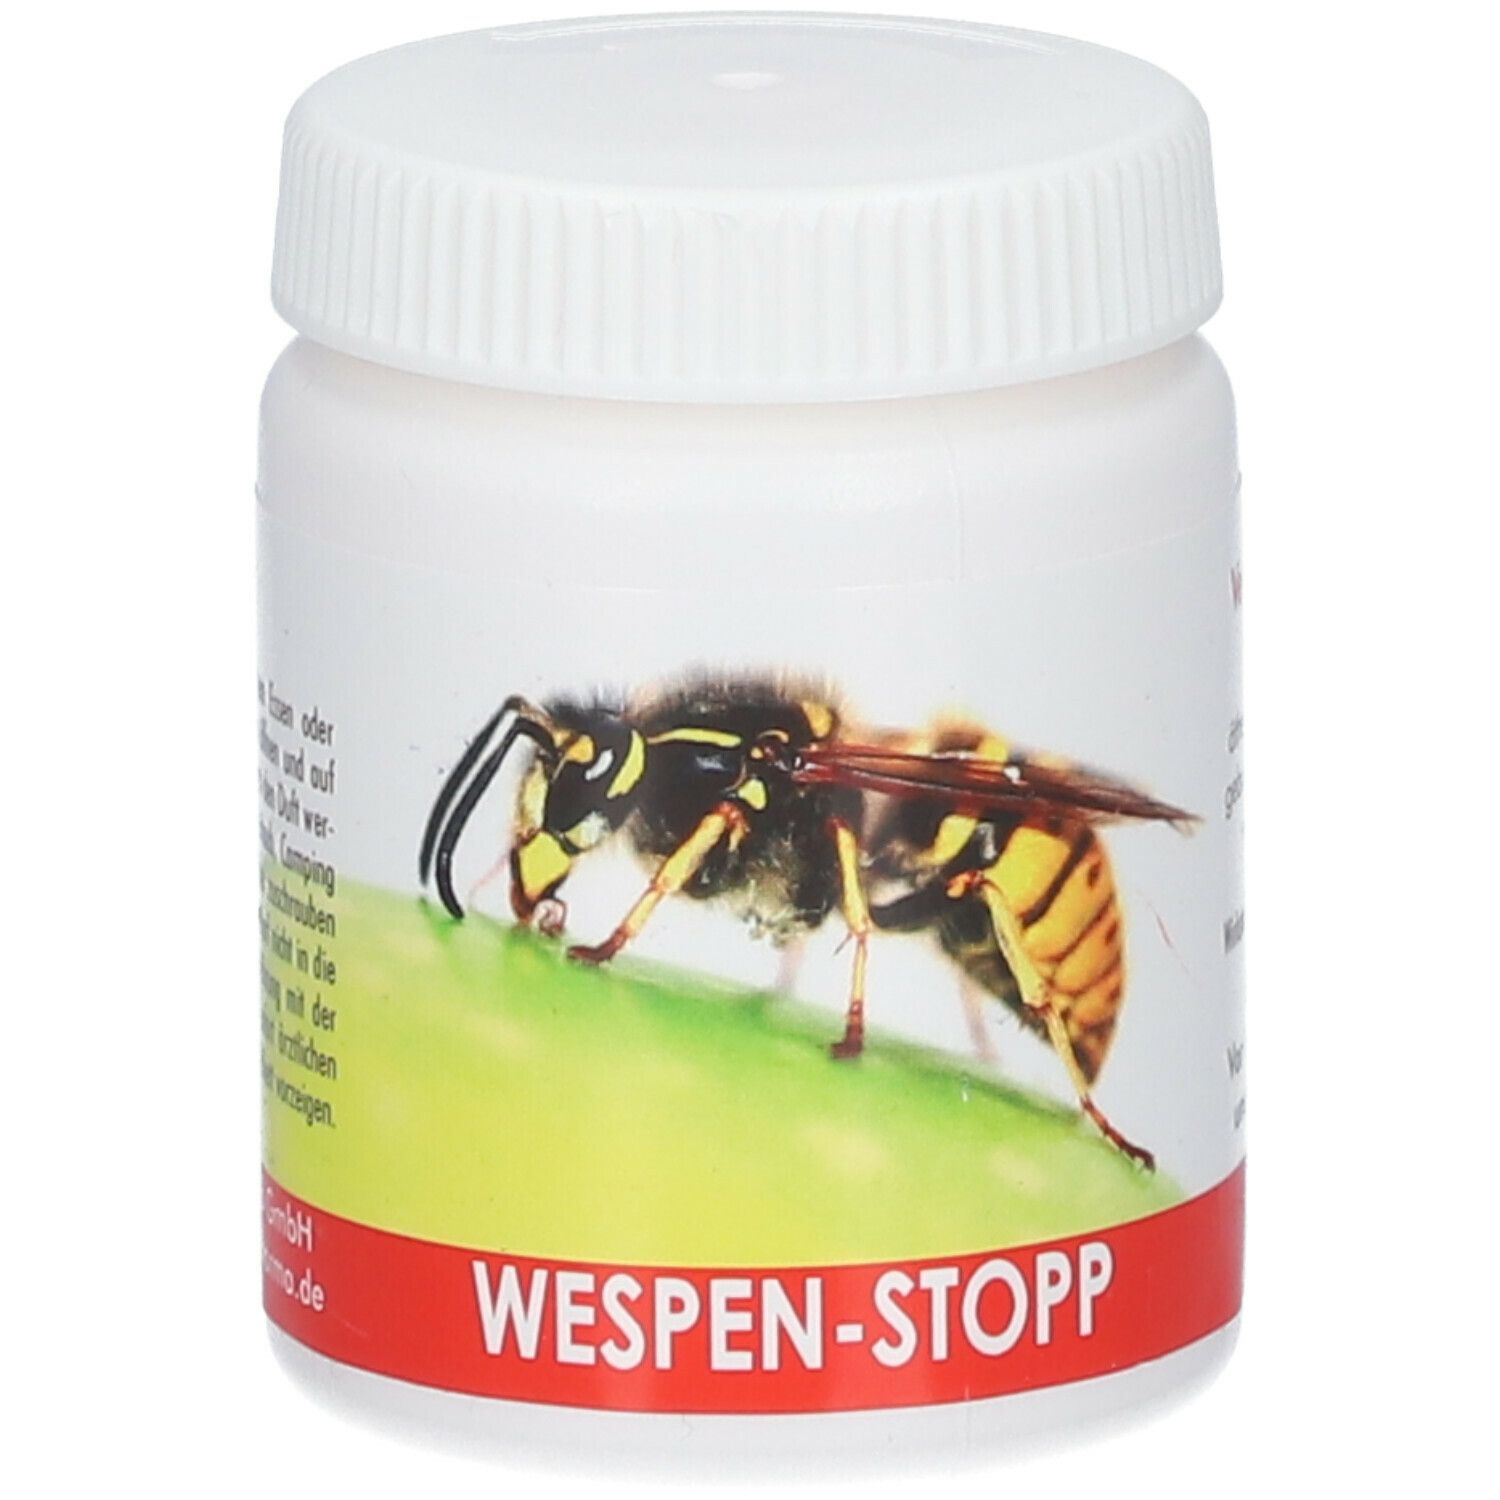 Wespen-Stopp